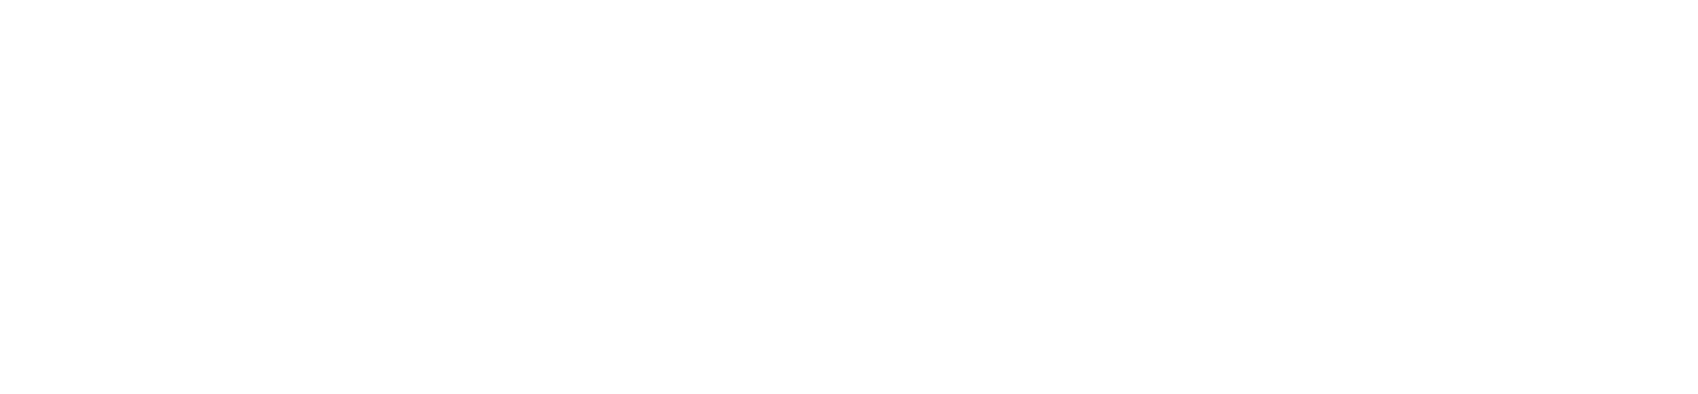 Summer garage sale up to 75% off.